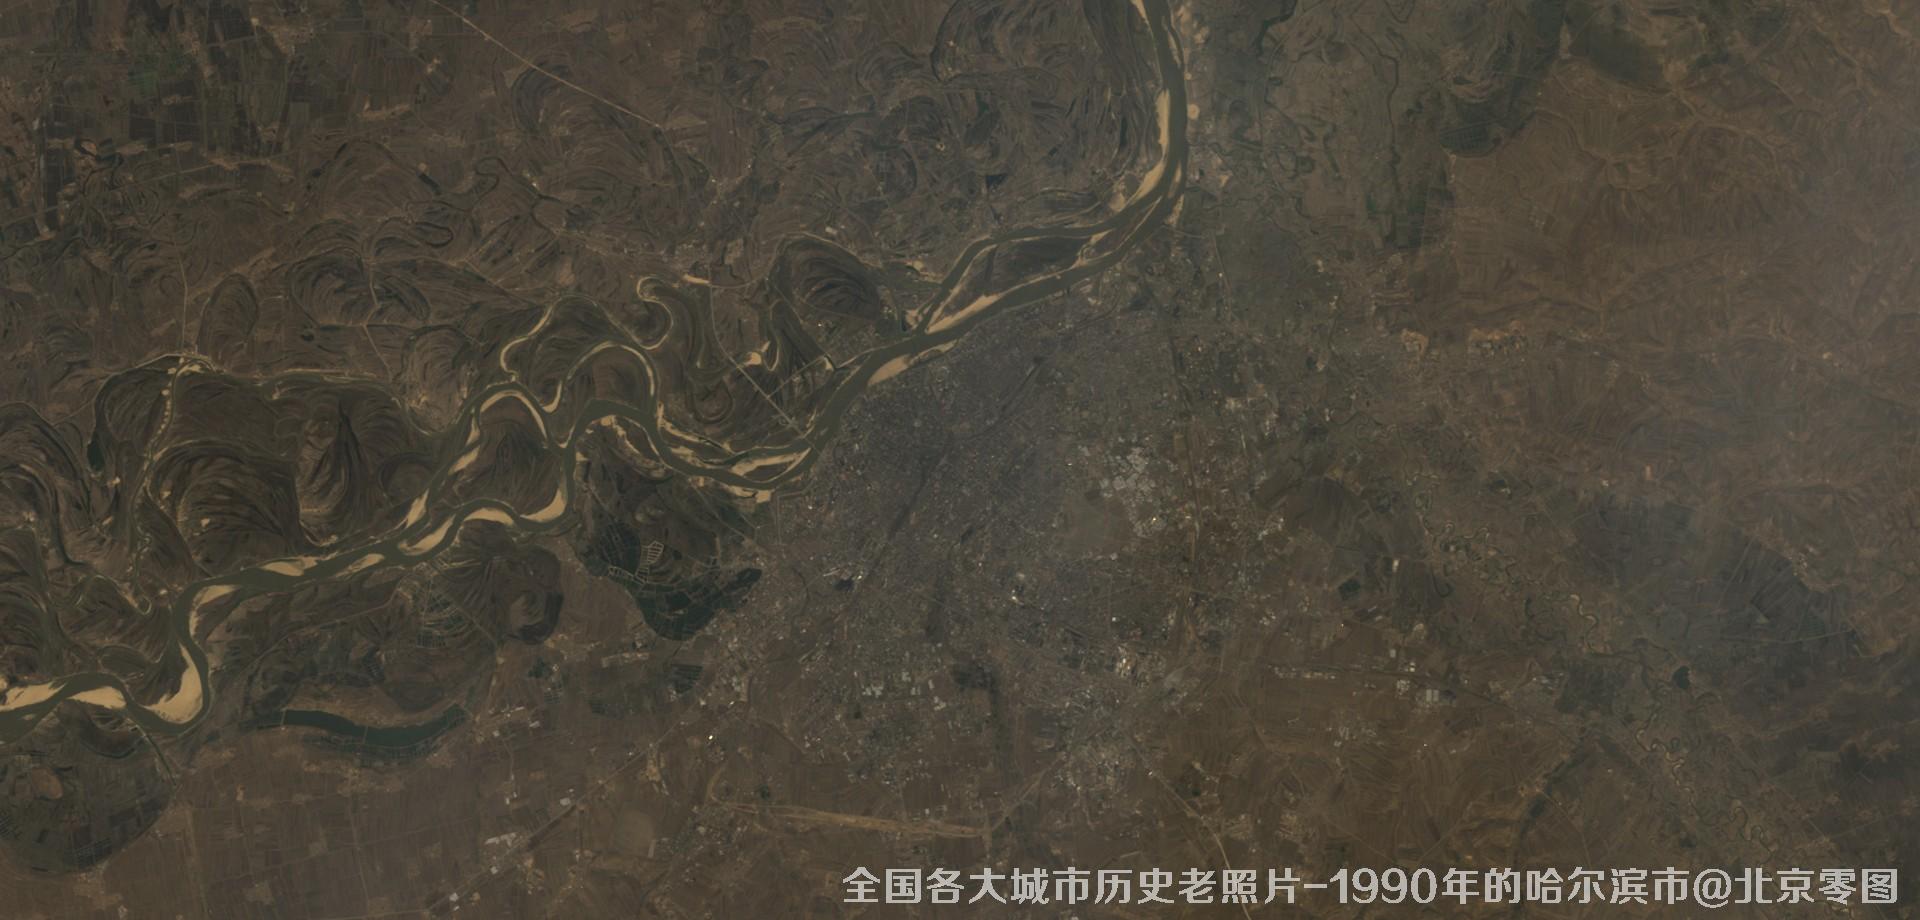 美国Landsat卫星拍摄的1990年的黑龙江省哈尔滨市历史卫星影像图